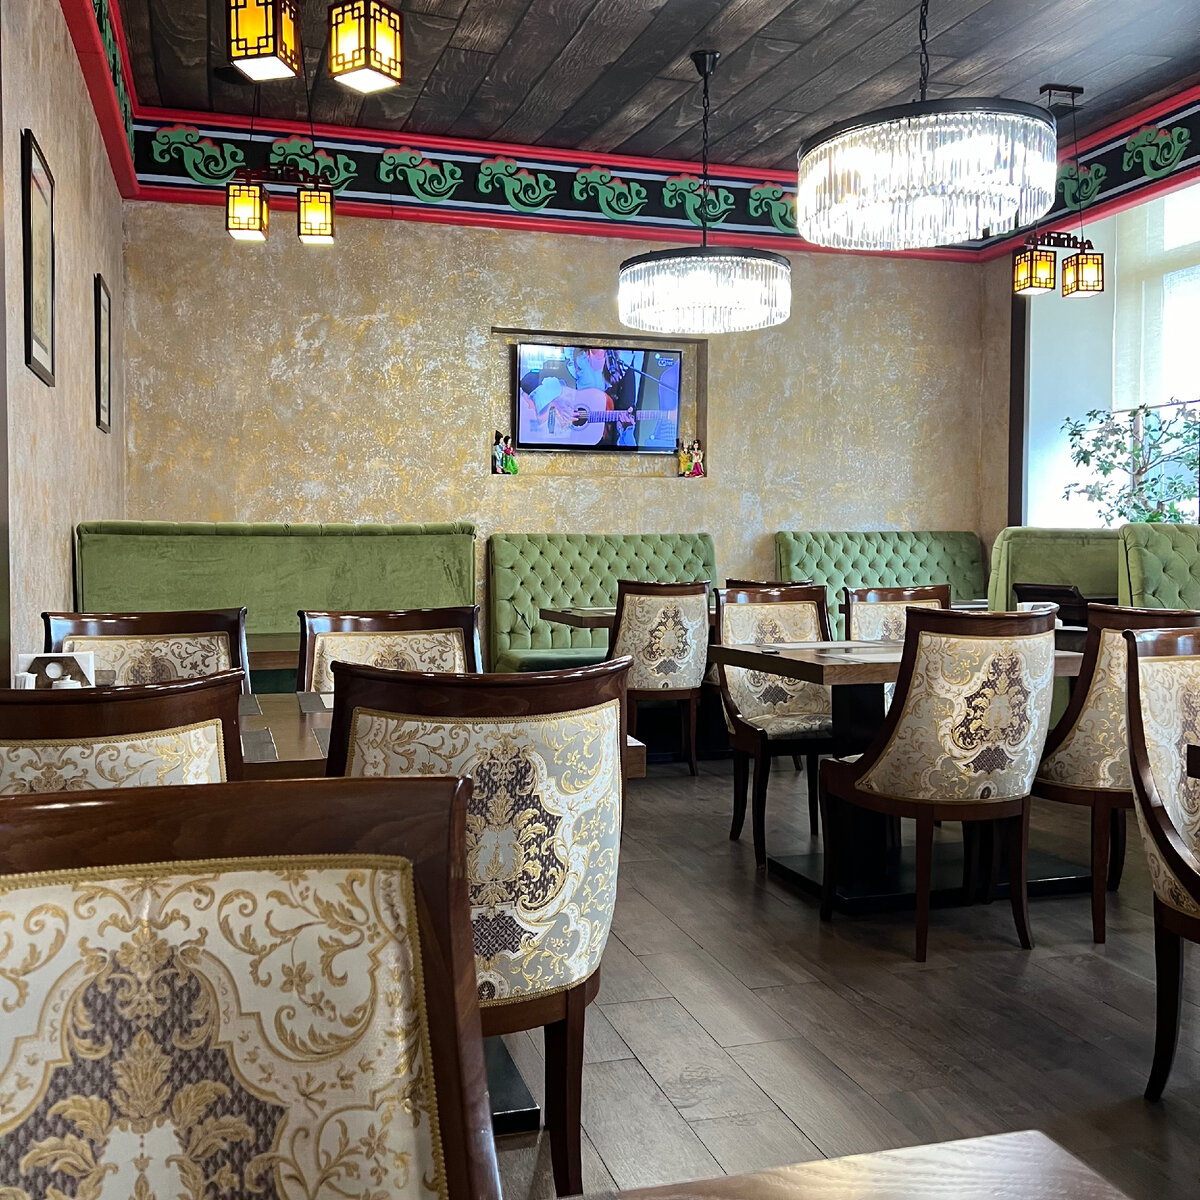 «Белый Журавль» – не просто и не только птица, а еще и ресторан корейской кухни в Москве, который открылся в 2000 году в начале Комсомольского проспекта, затем переехал на Фрунзенскую набережную рядом.-2